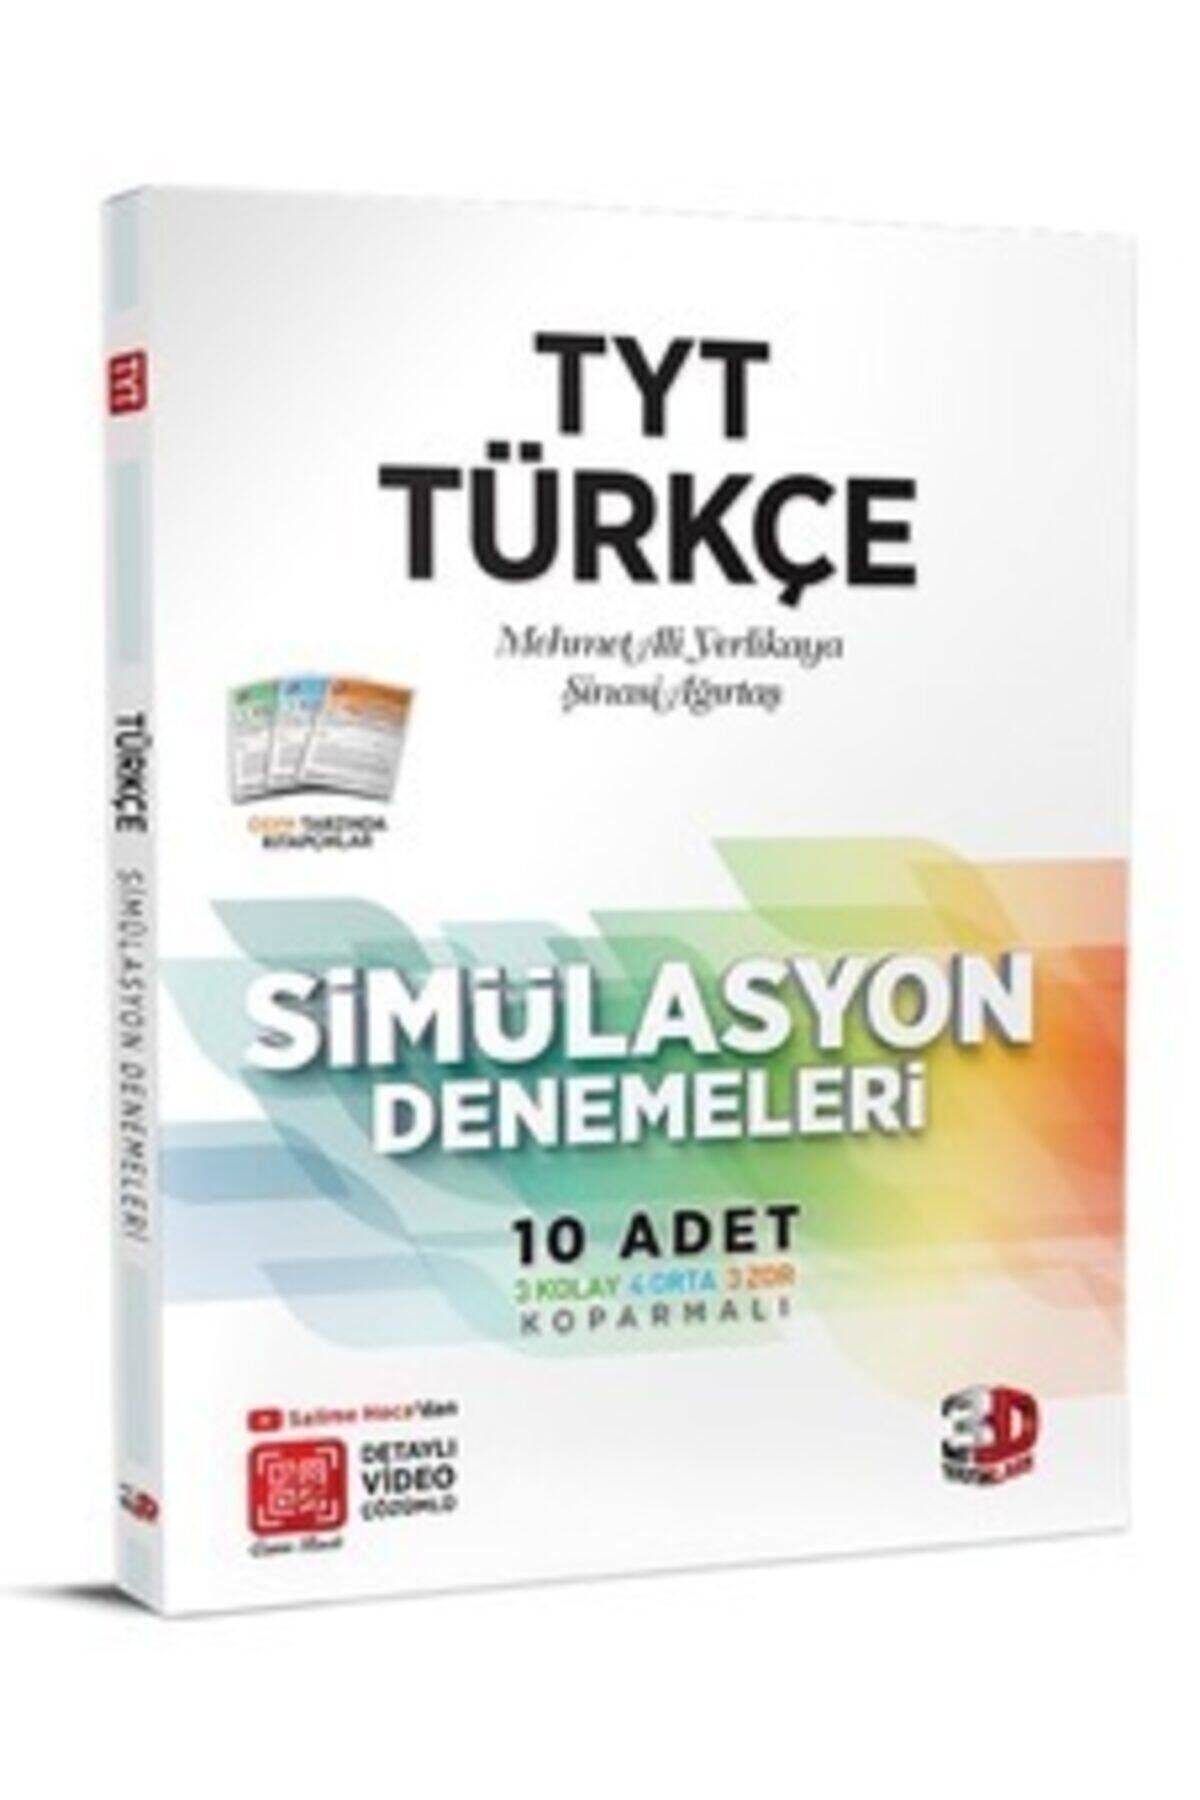 3D Yayınları *yeni* Tyt 3d Sımulasyon Turkce Denemelerı